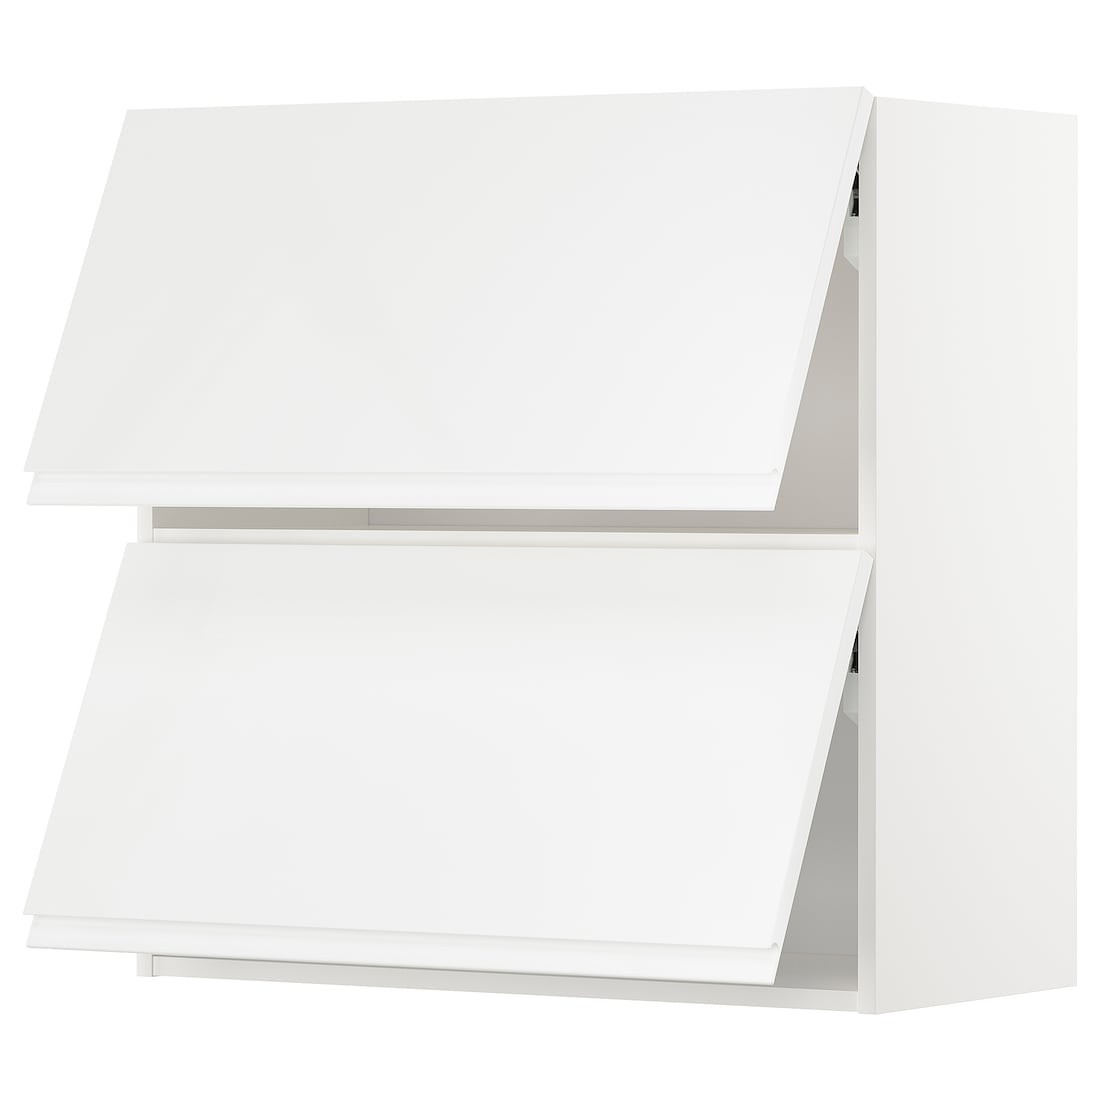 METOD МЕТОД Навесной горизонтальный шкаф / 2 двери, белый / Voxtorp глянцевый / белый, 80x80 см